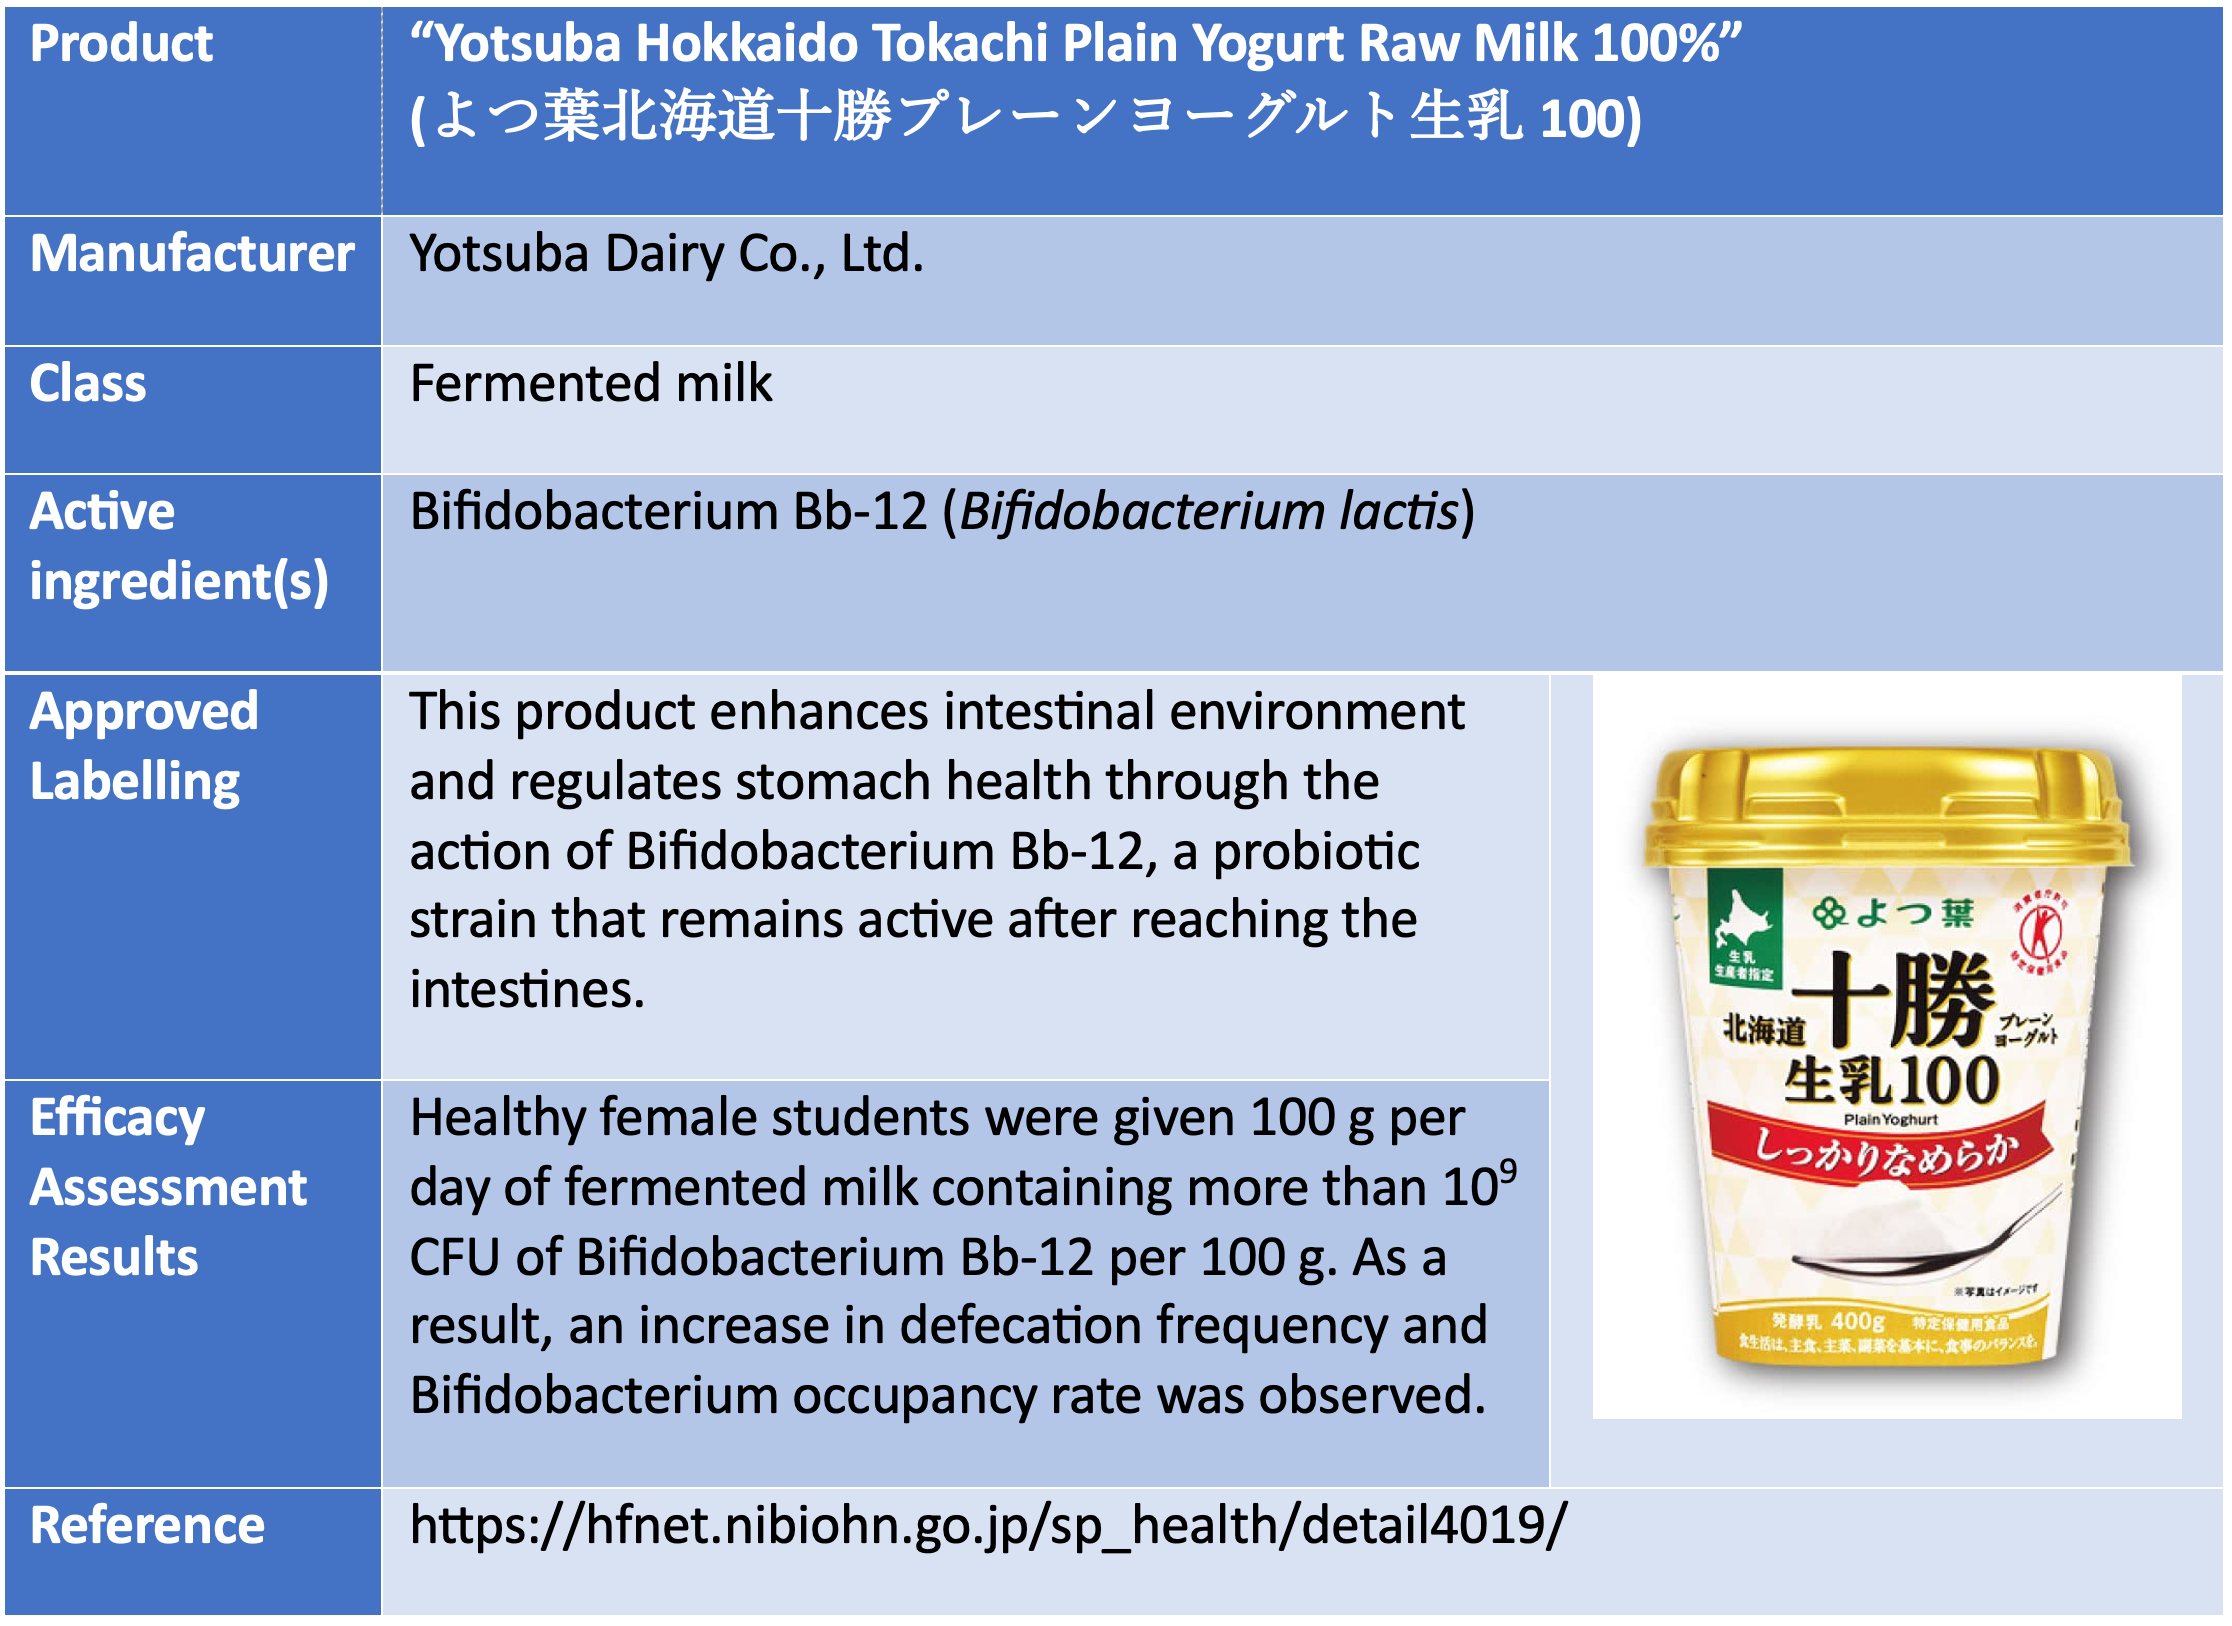 Yotsuba Hokkaido Tokachi Plain Yogurt Raw Milk 100%”